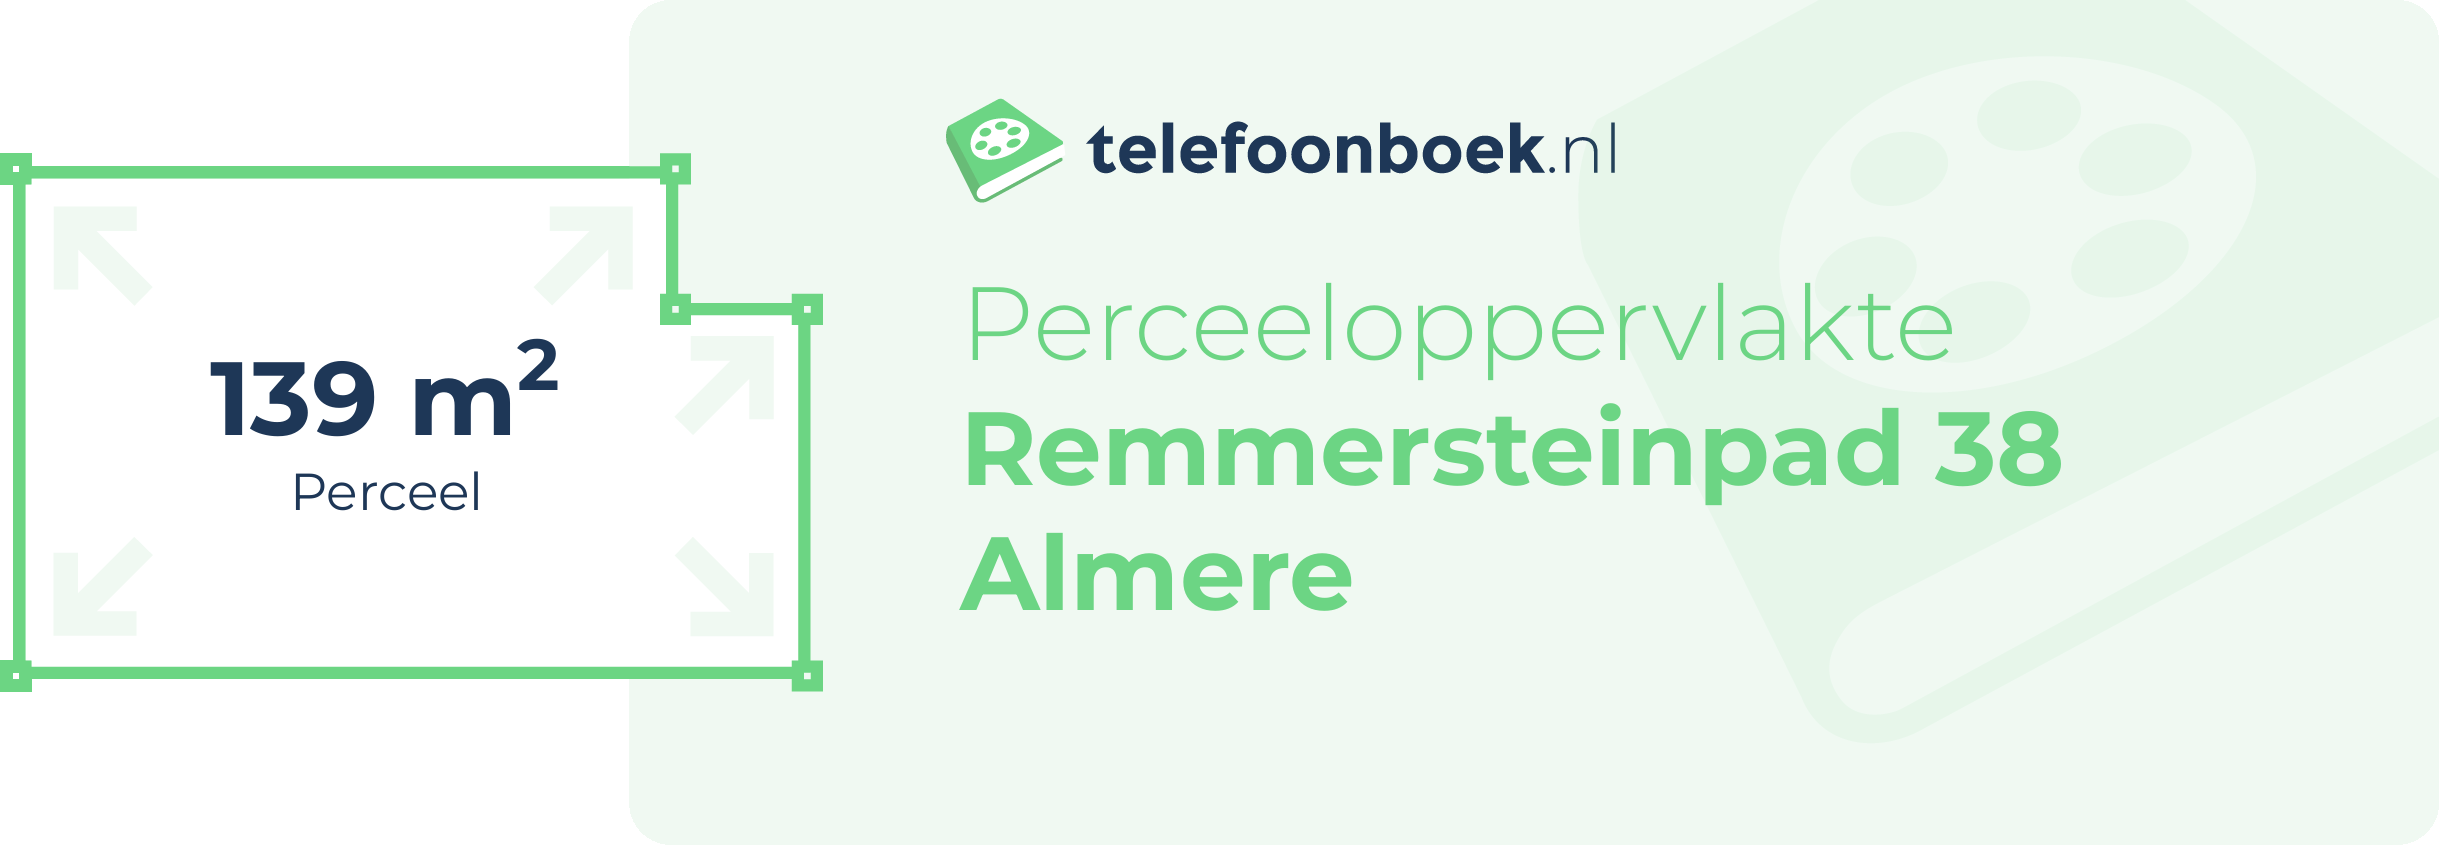 Perceeloppervlakte Remmersteinpad 38 Almere